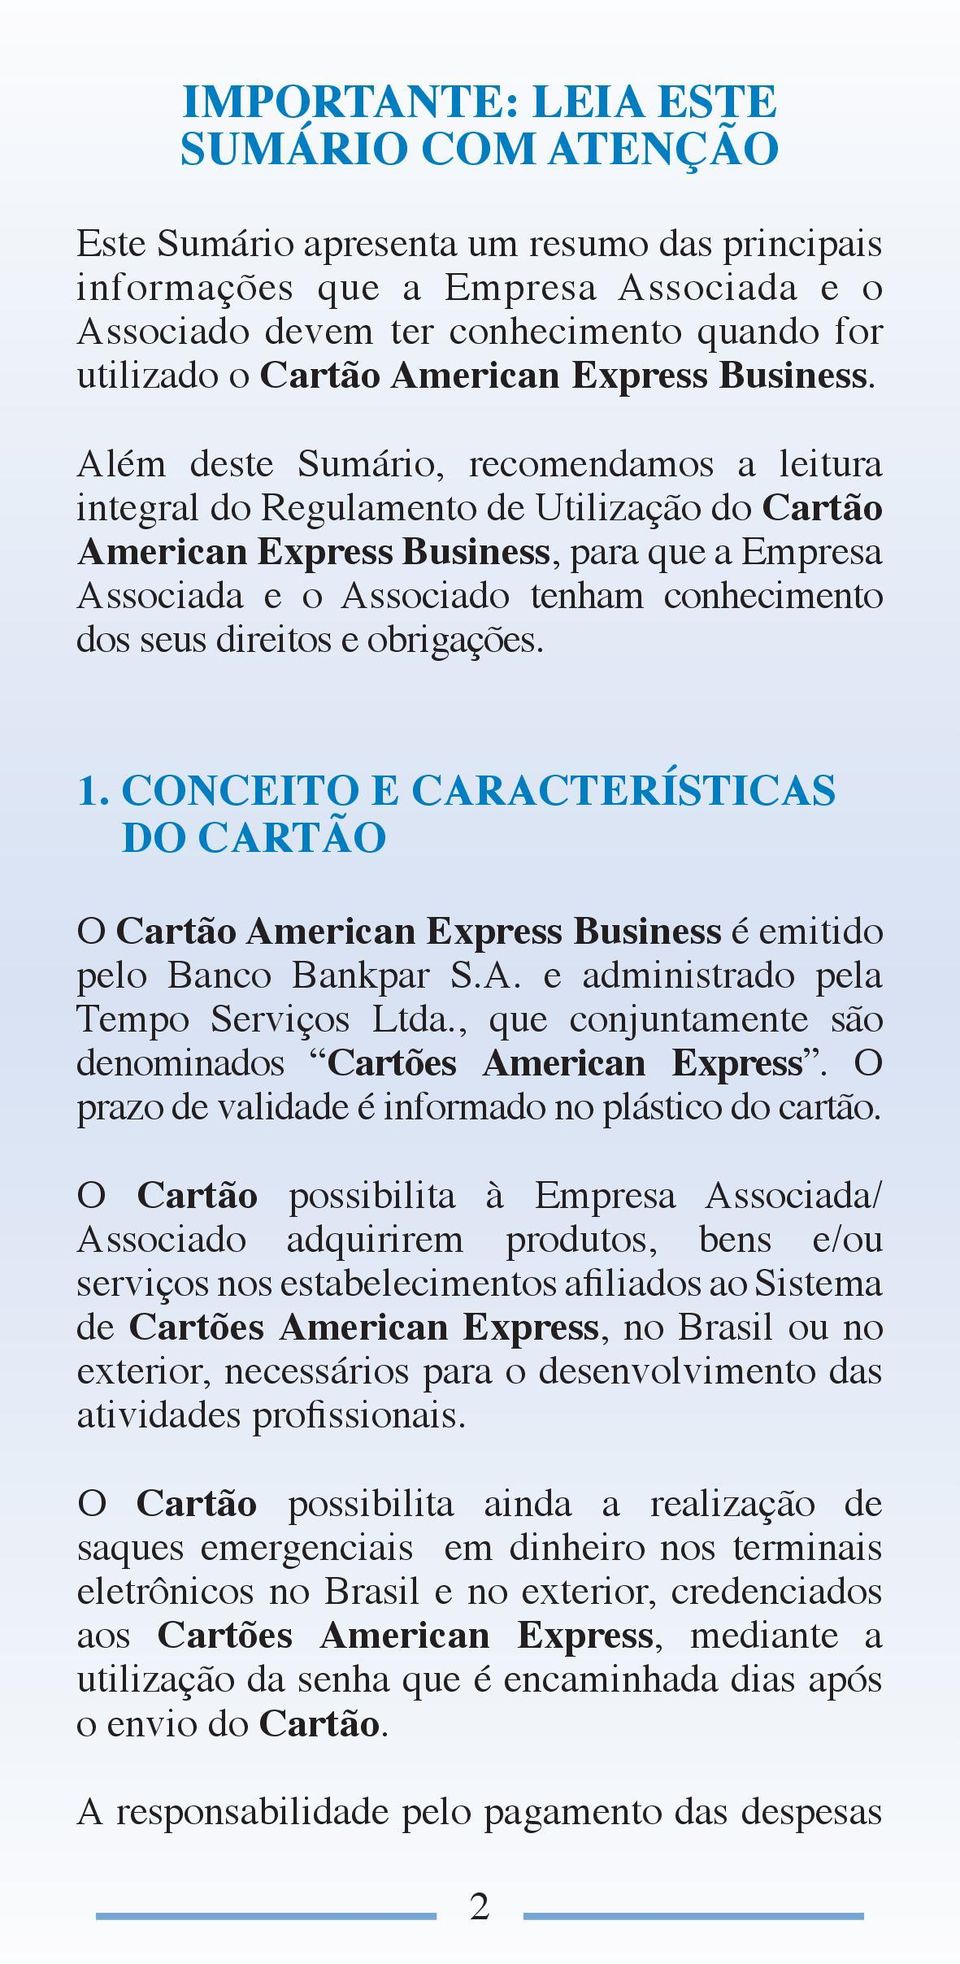 Além deste Sumário, recomendamos a leitura integral do Regulamento de Utilização do Cartão American Express Business, para que a Empresa Associada e o Associado tenham conhecimento dos seus direitos